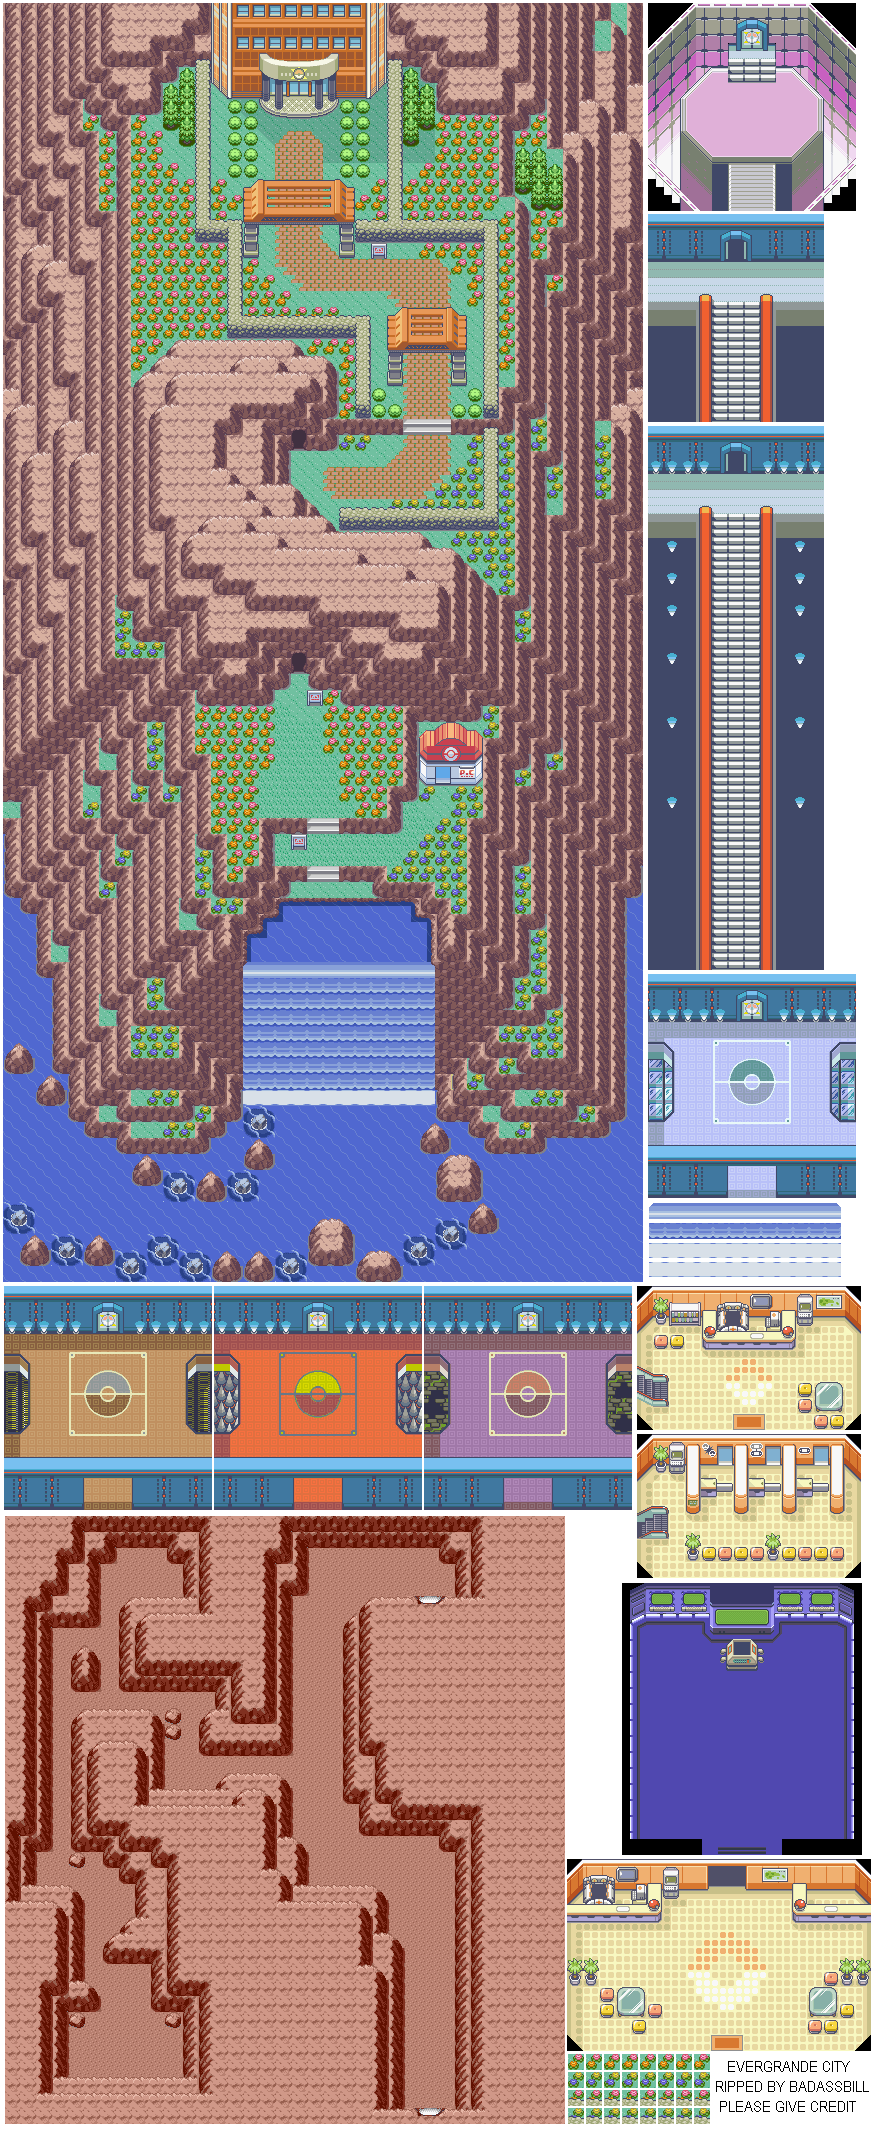 Pokémon Ruby / Sapphire - Evergrande City